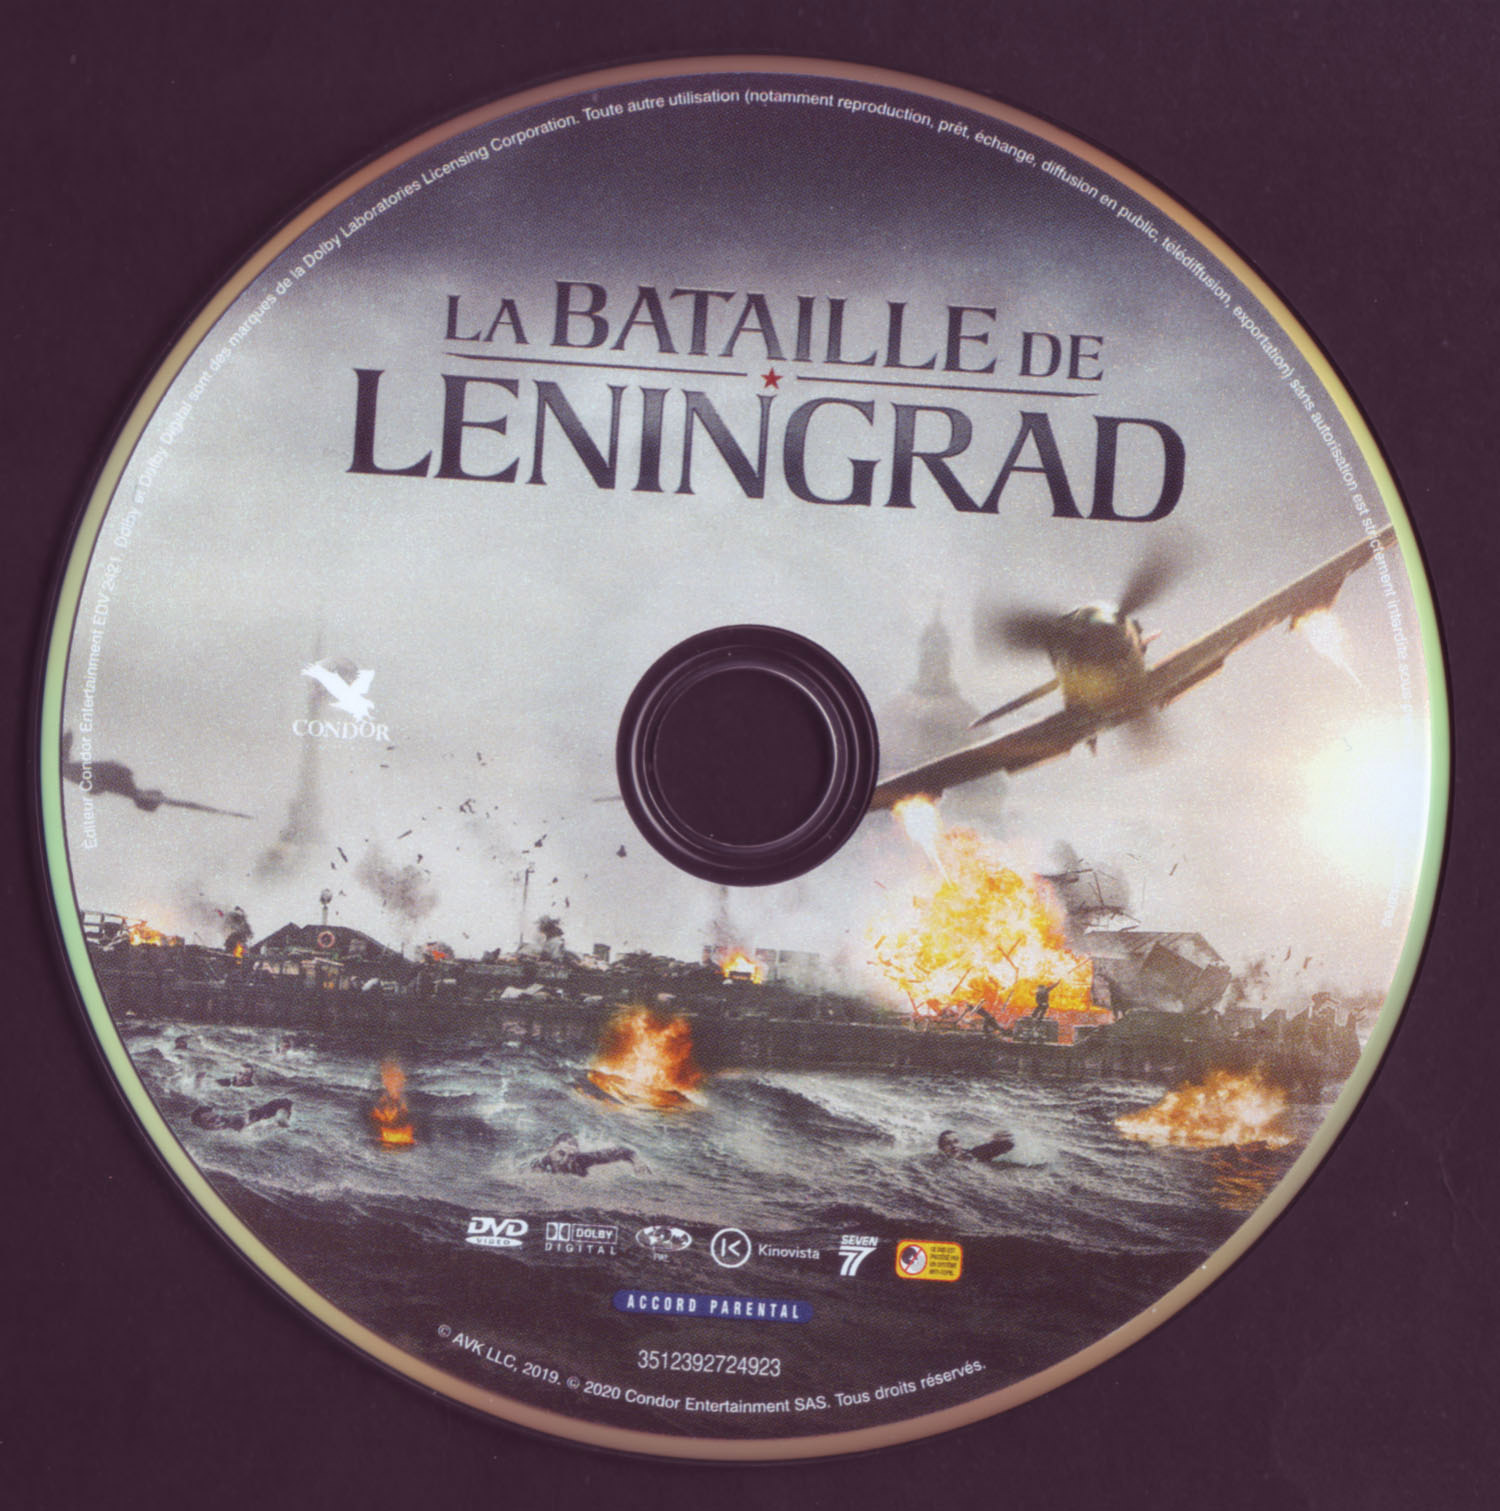 La bataille de Leningrad